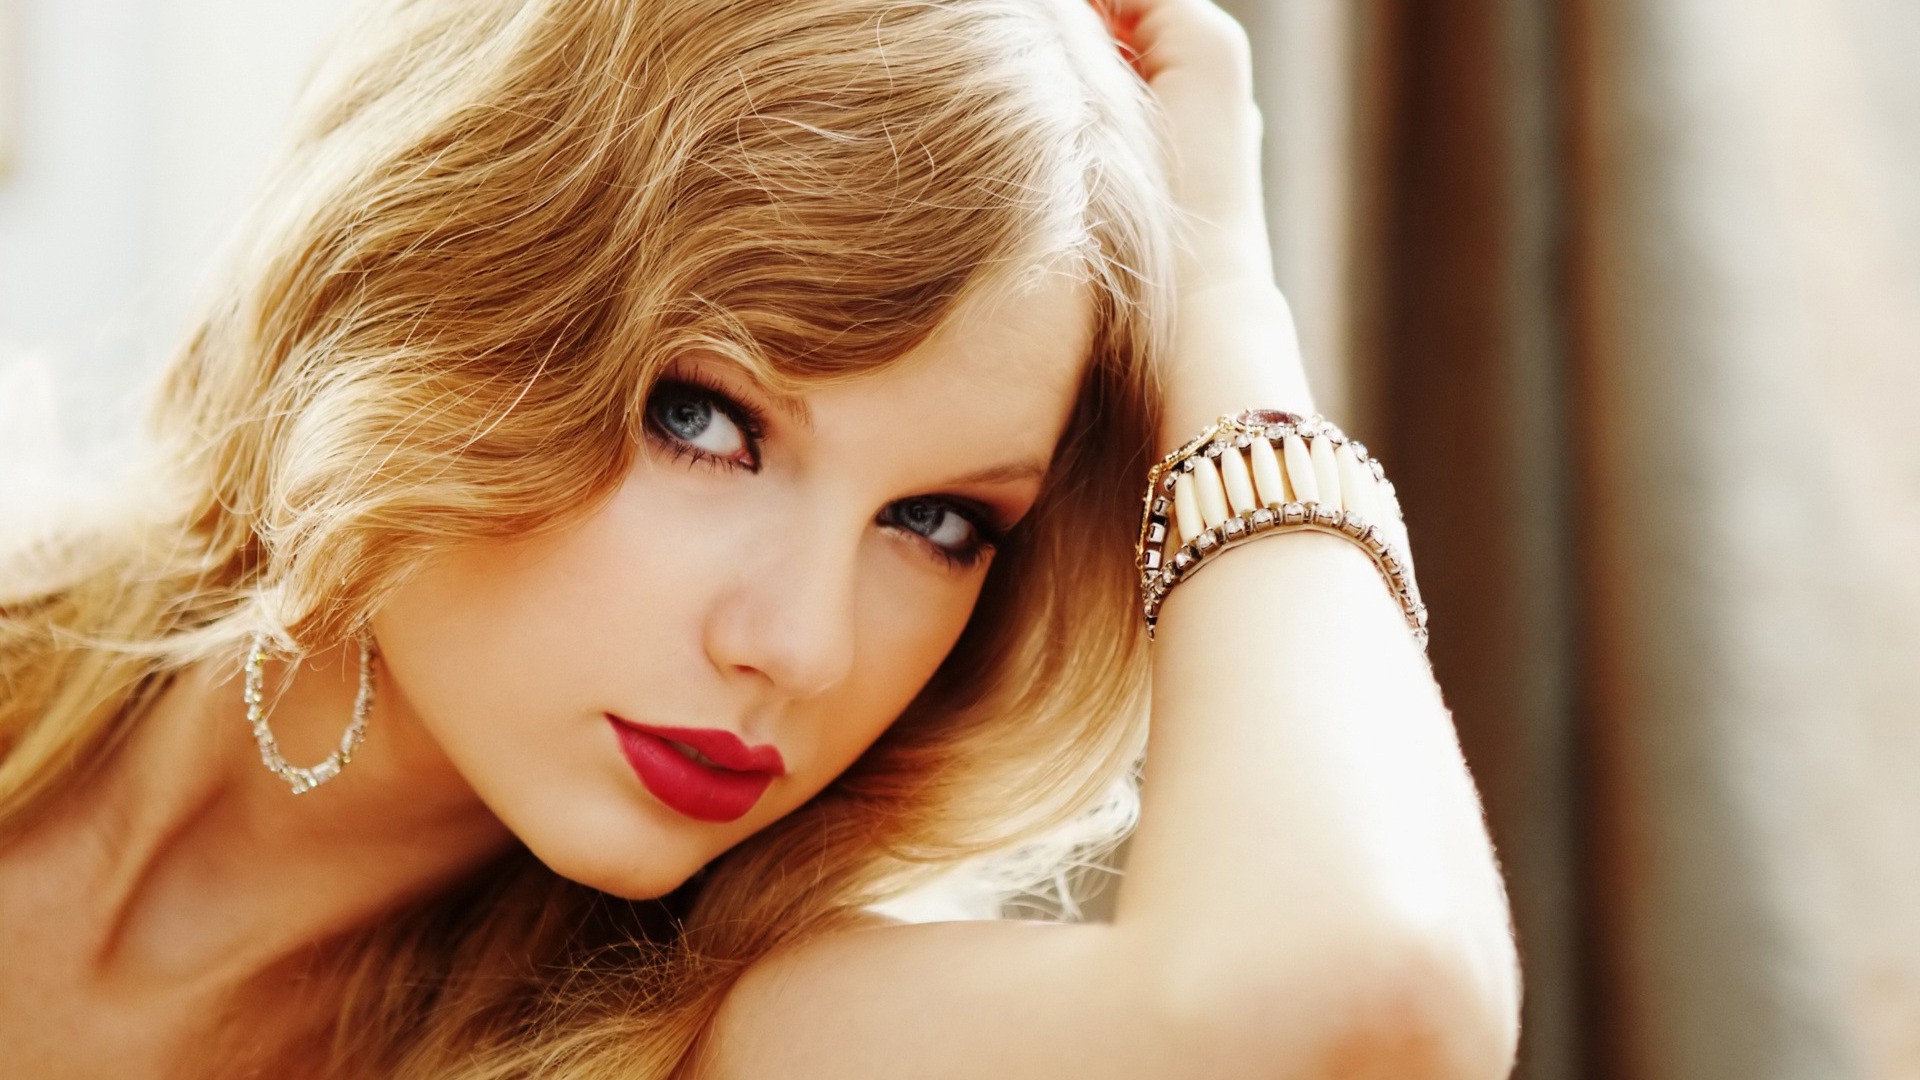 Taylor Swift, Celebrity, Blonde, Singer, Blue Eyes, Women, Face Wallpaper